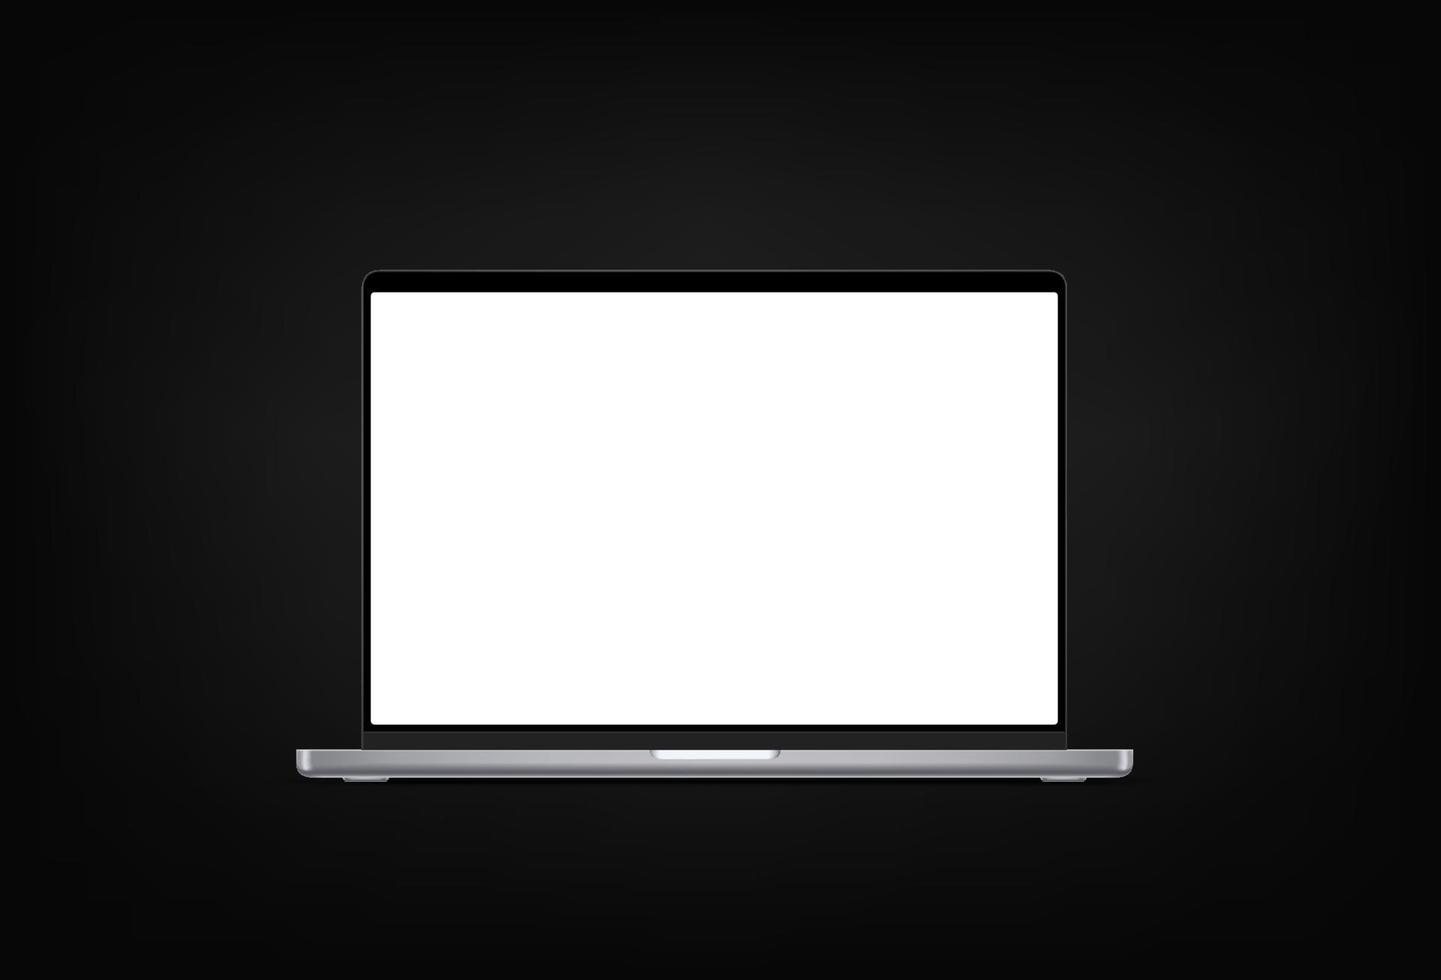 maquete 3d moderno do vetor do computador portátil isolado no fundo preto. ilustração detalhada fotoreal do vetor